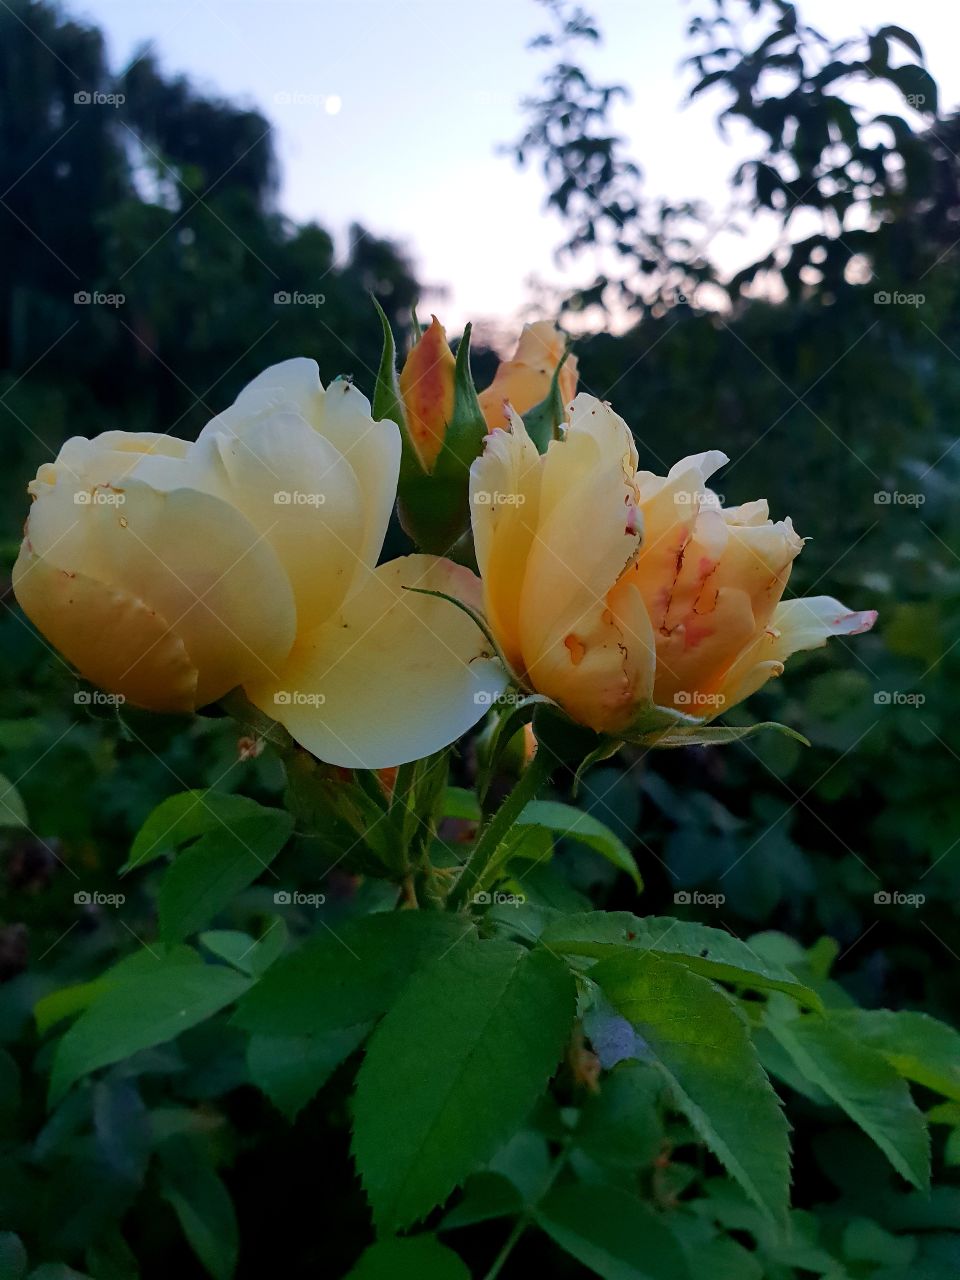 again roses